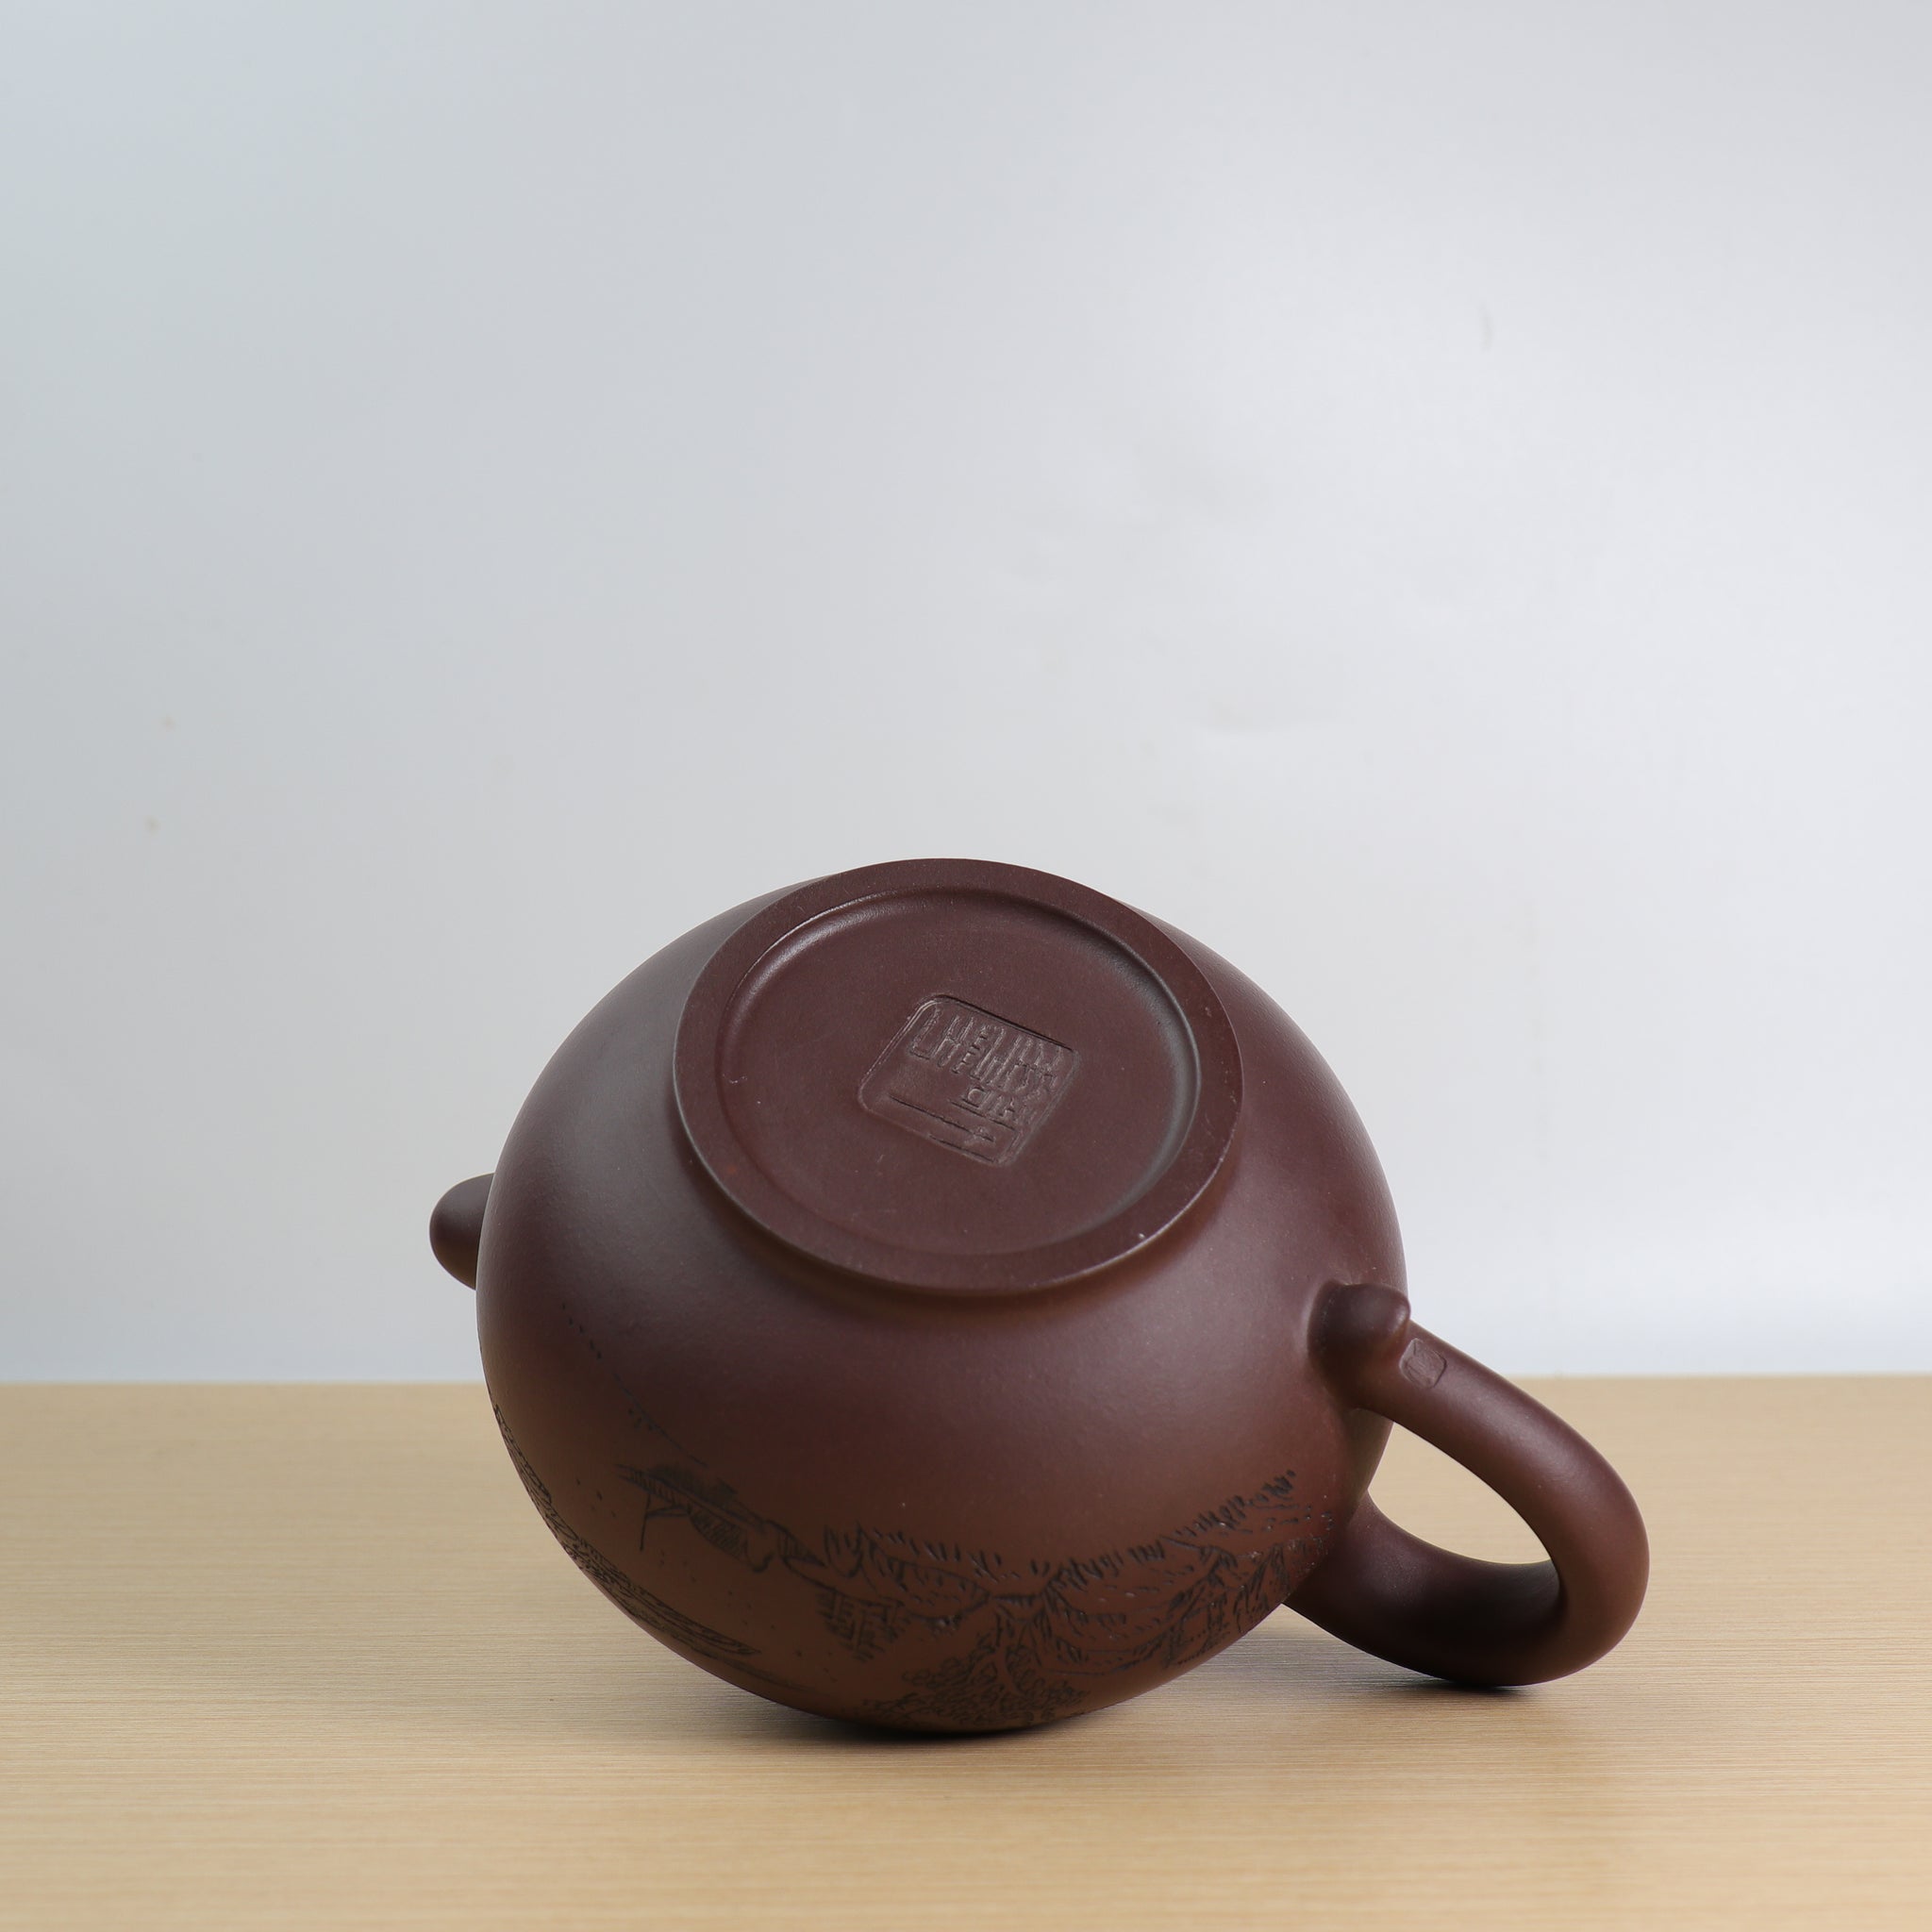 【大福】原礦紫泥雕刻紫砂茶壺